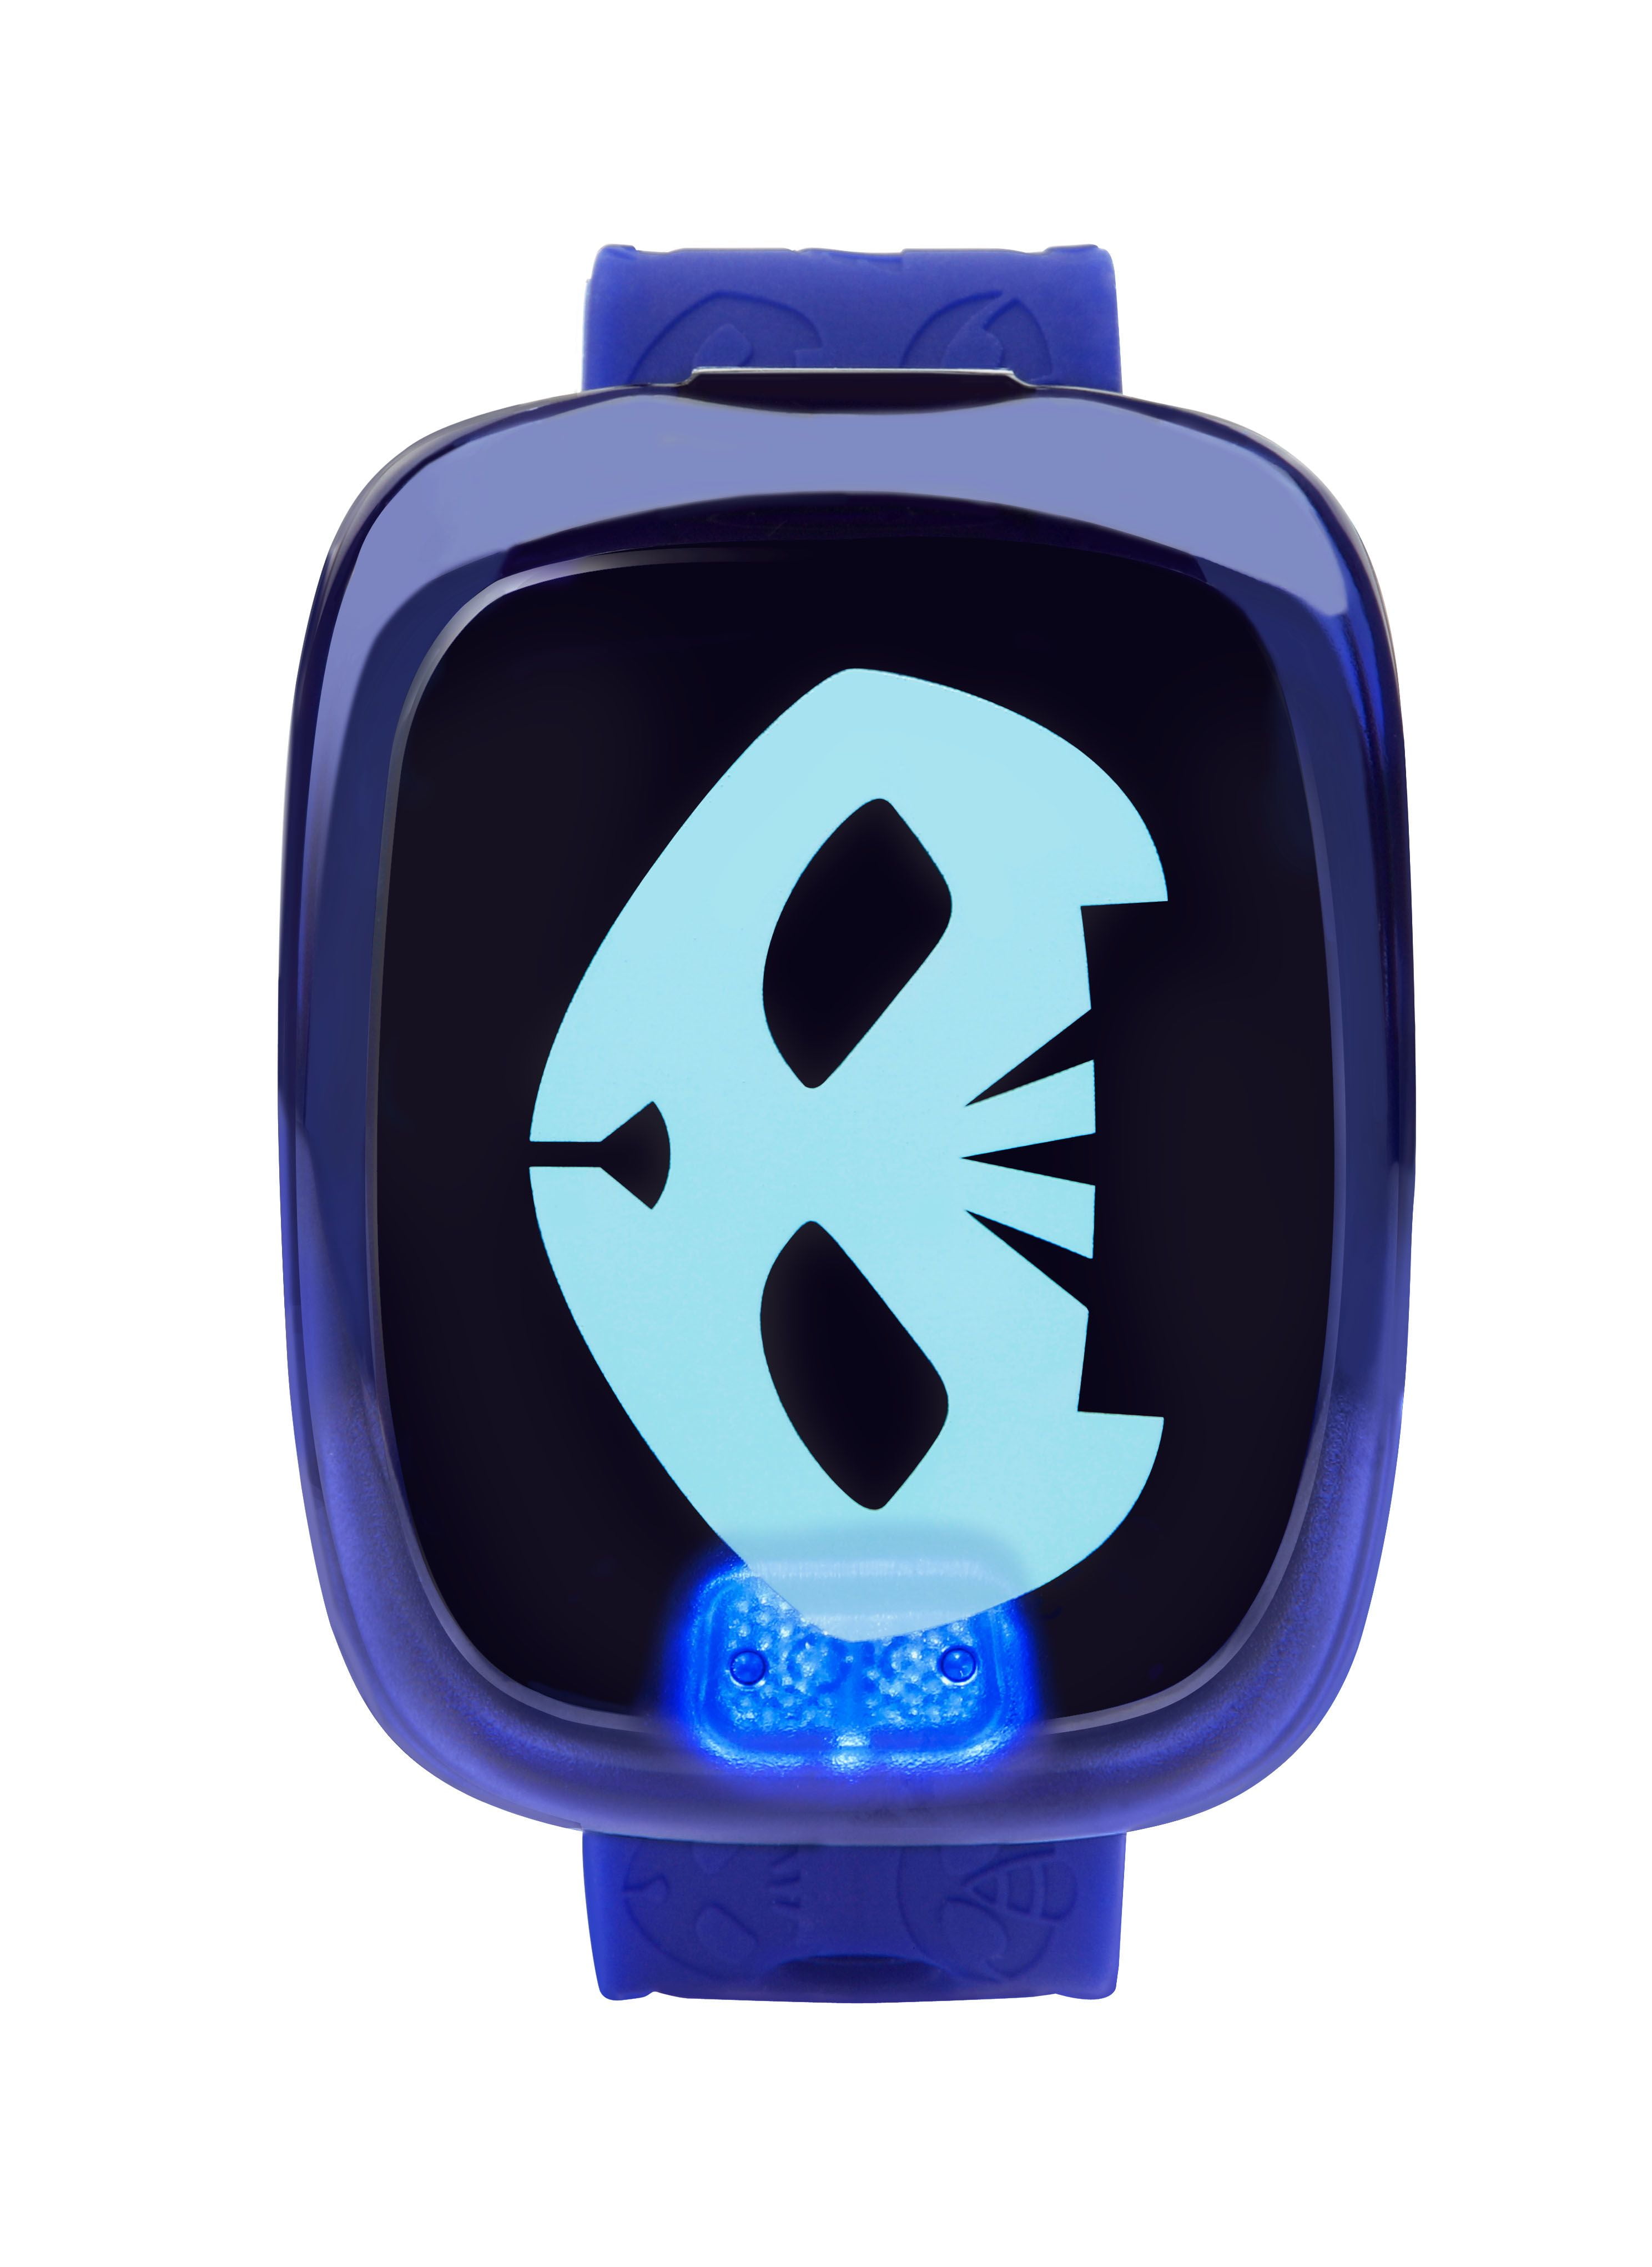 Blue-Alarm Clock,4 Games,Timer Details about   New VTech PJ Masks Super Catboy Learning Watch 